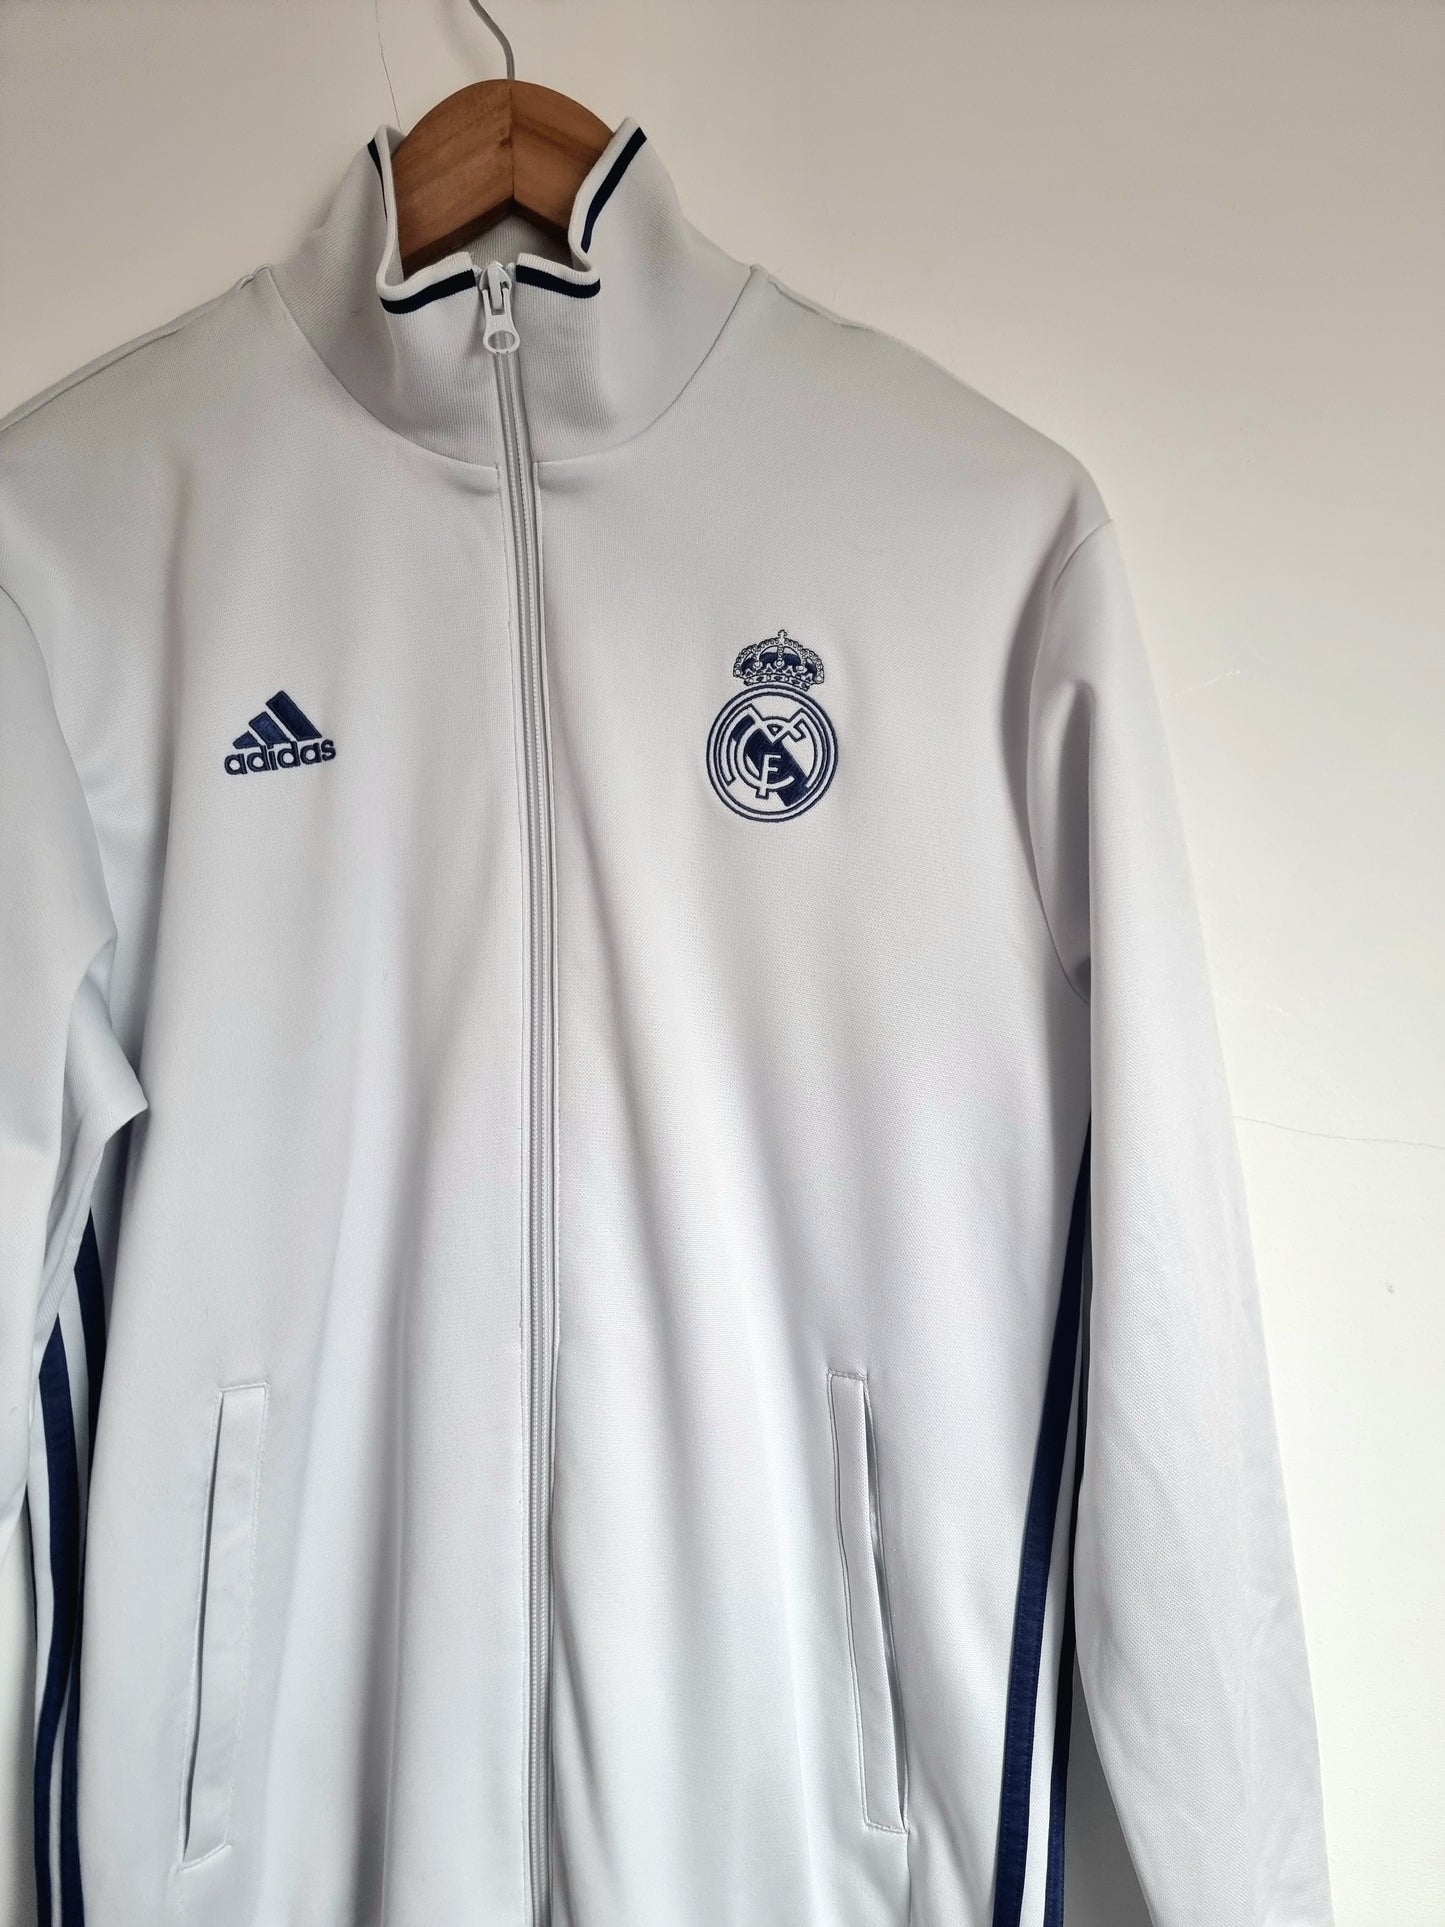 Adidas Real Madrid 15/16 Track Jacket Medium